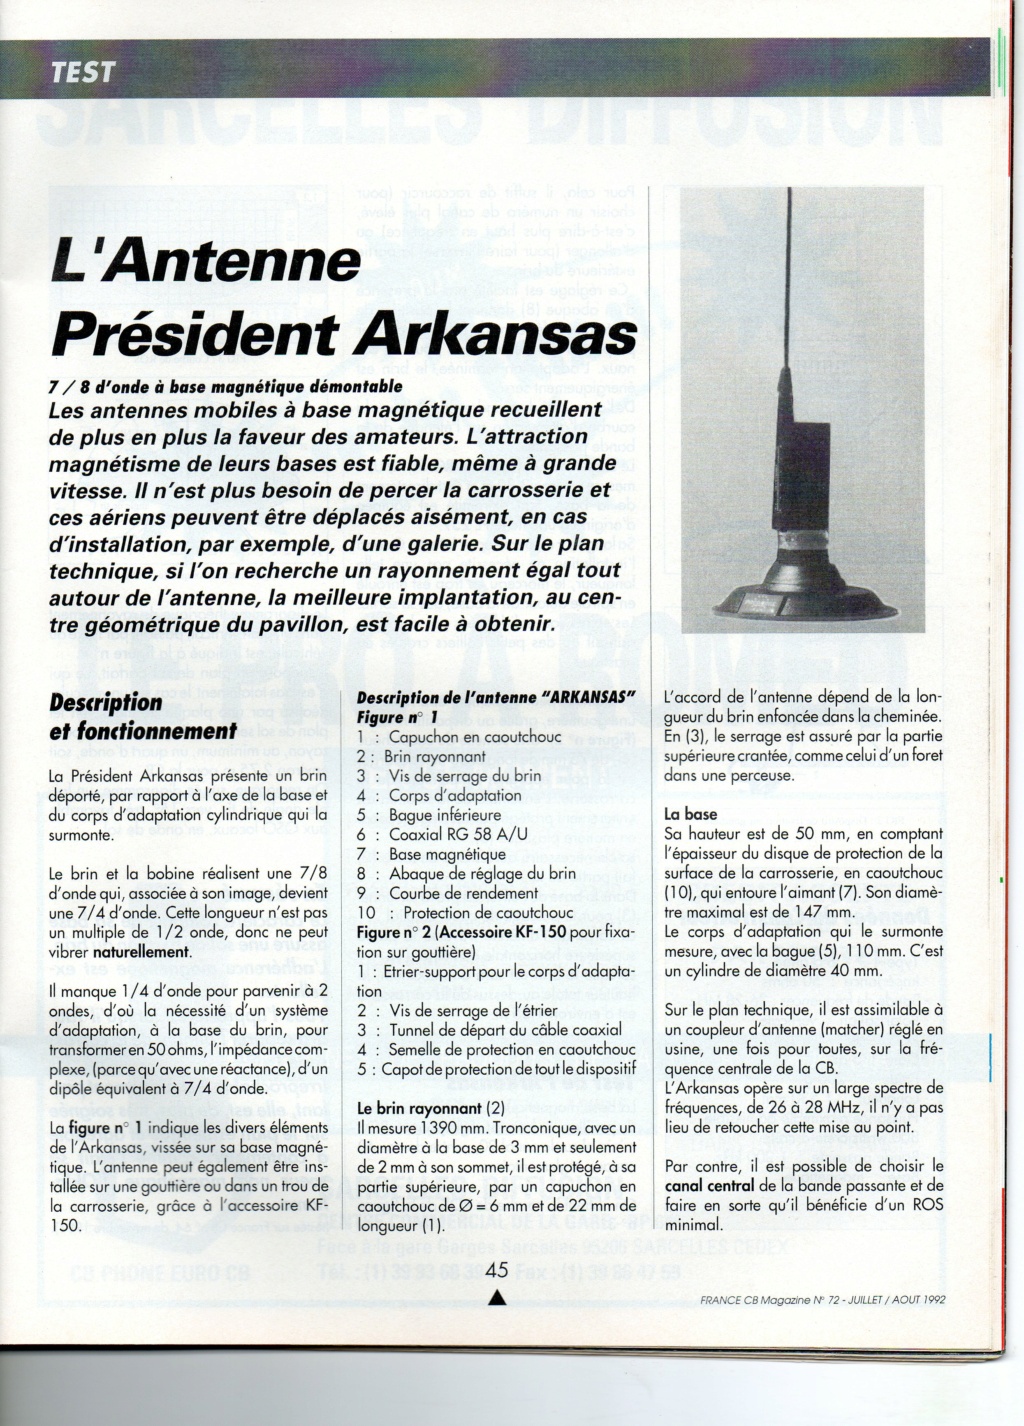 President - President Oklahoma / Arkansas (Antenne mobile) Img11015